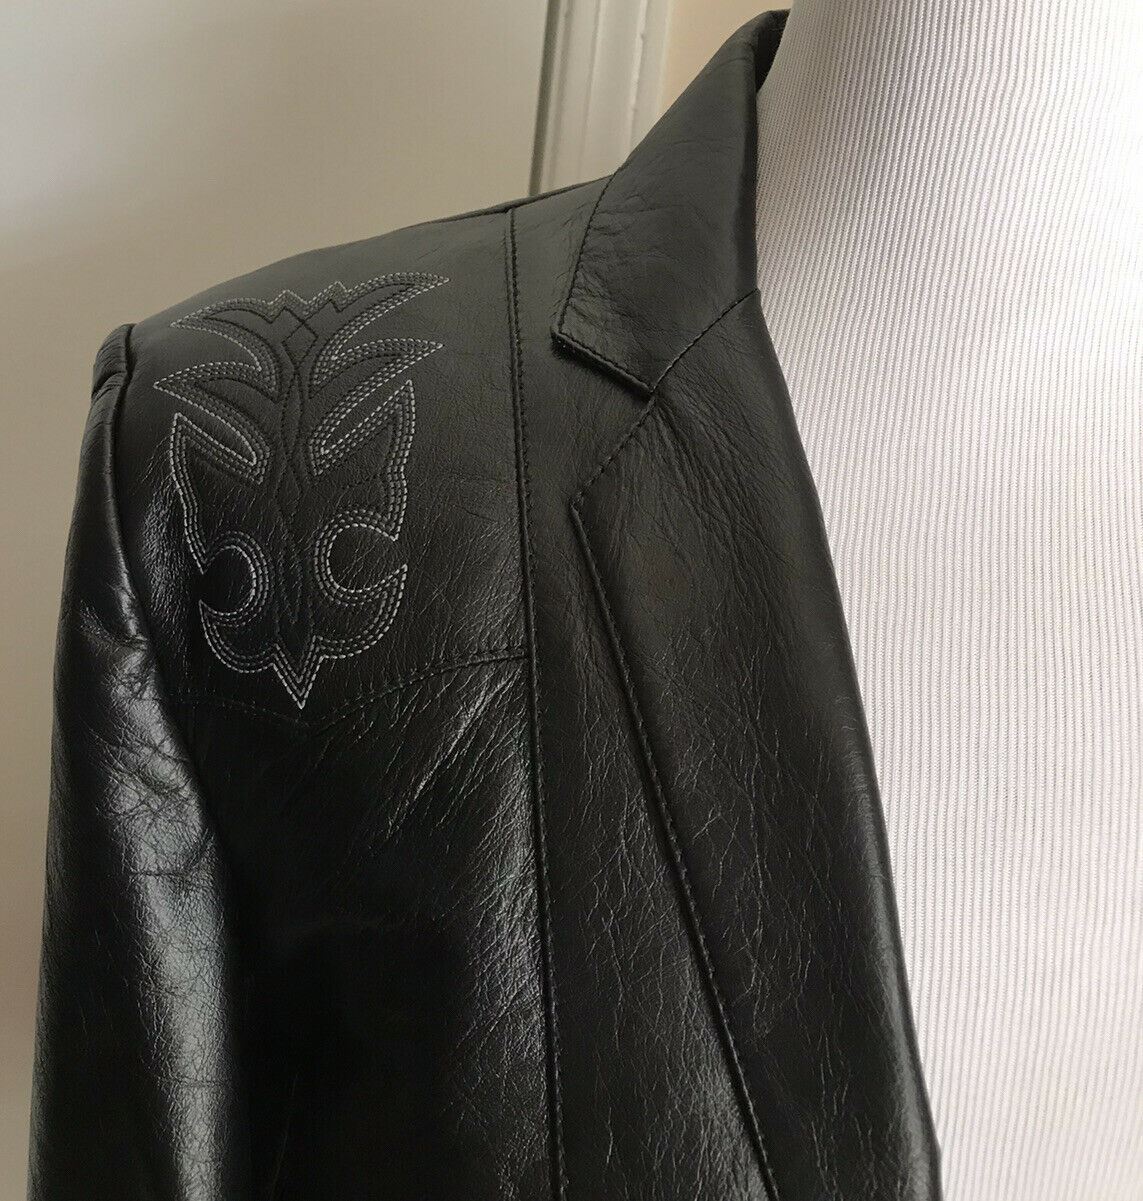 New $4990 Saint Laurent Men’s Western Leather Vest Jacket Black 44 US/54 Eu